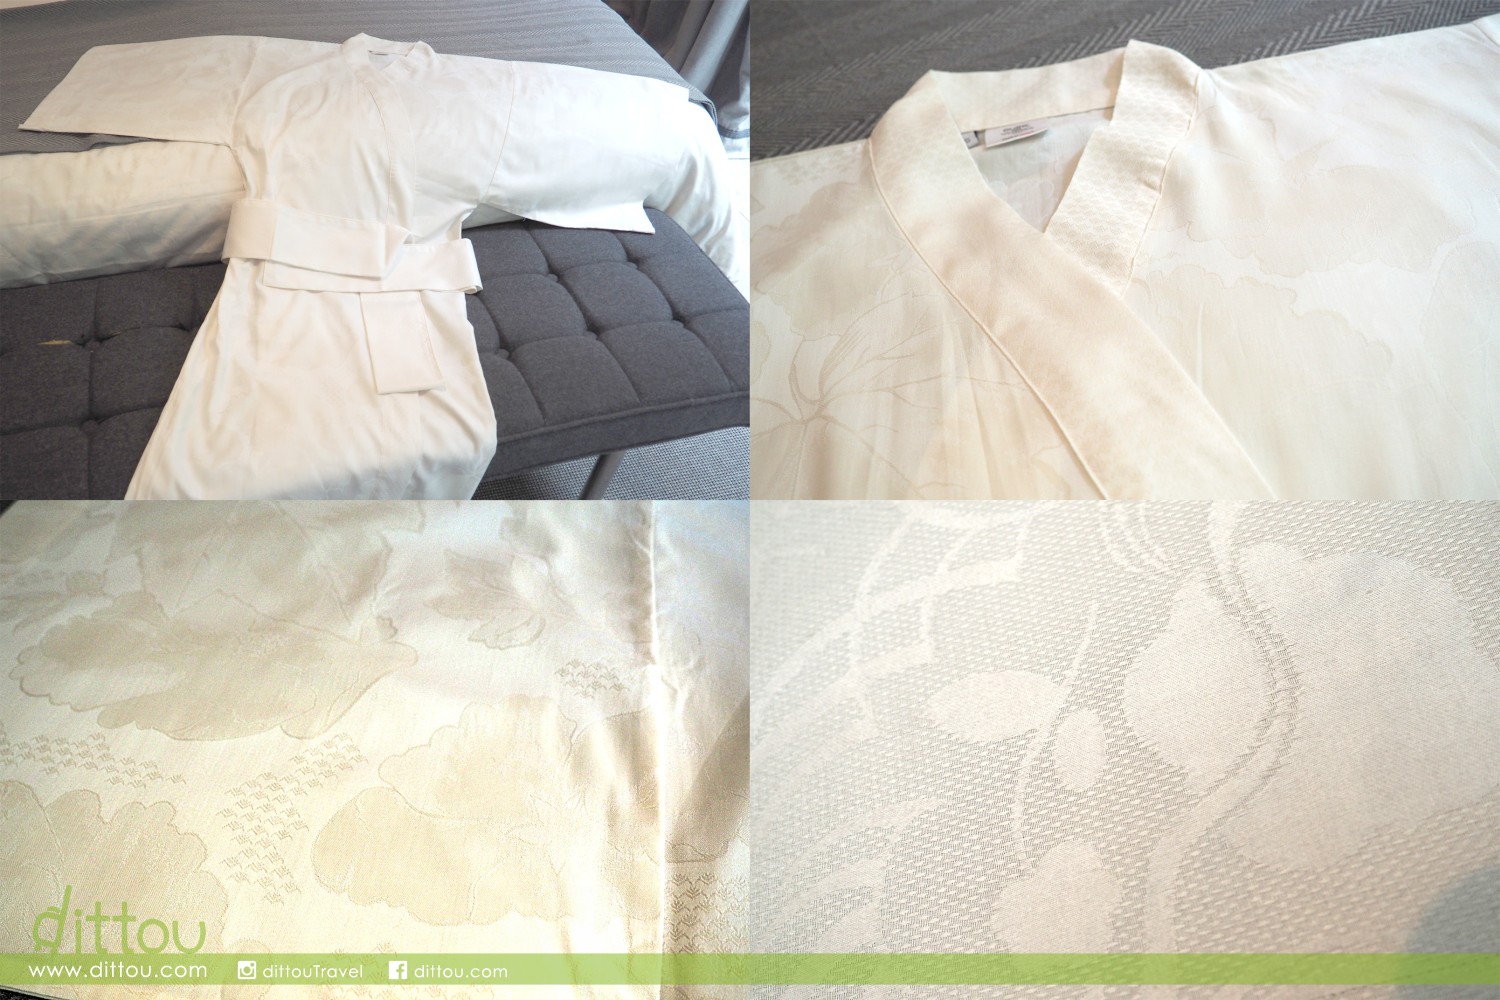 睡袍利用 100% 精梳棉（亦稱埃及棉）製成，格外輕巧透氣，近看有漂亮的暗花，讓大家在家居享受更舒適的睡眠，體驗「法式生活樂趣」（joie de vivre）。